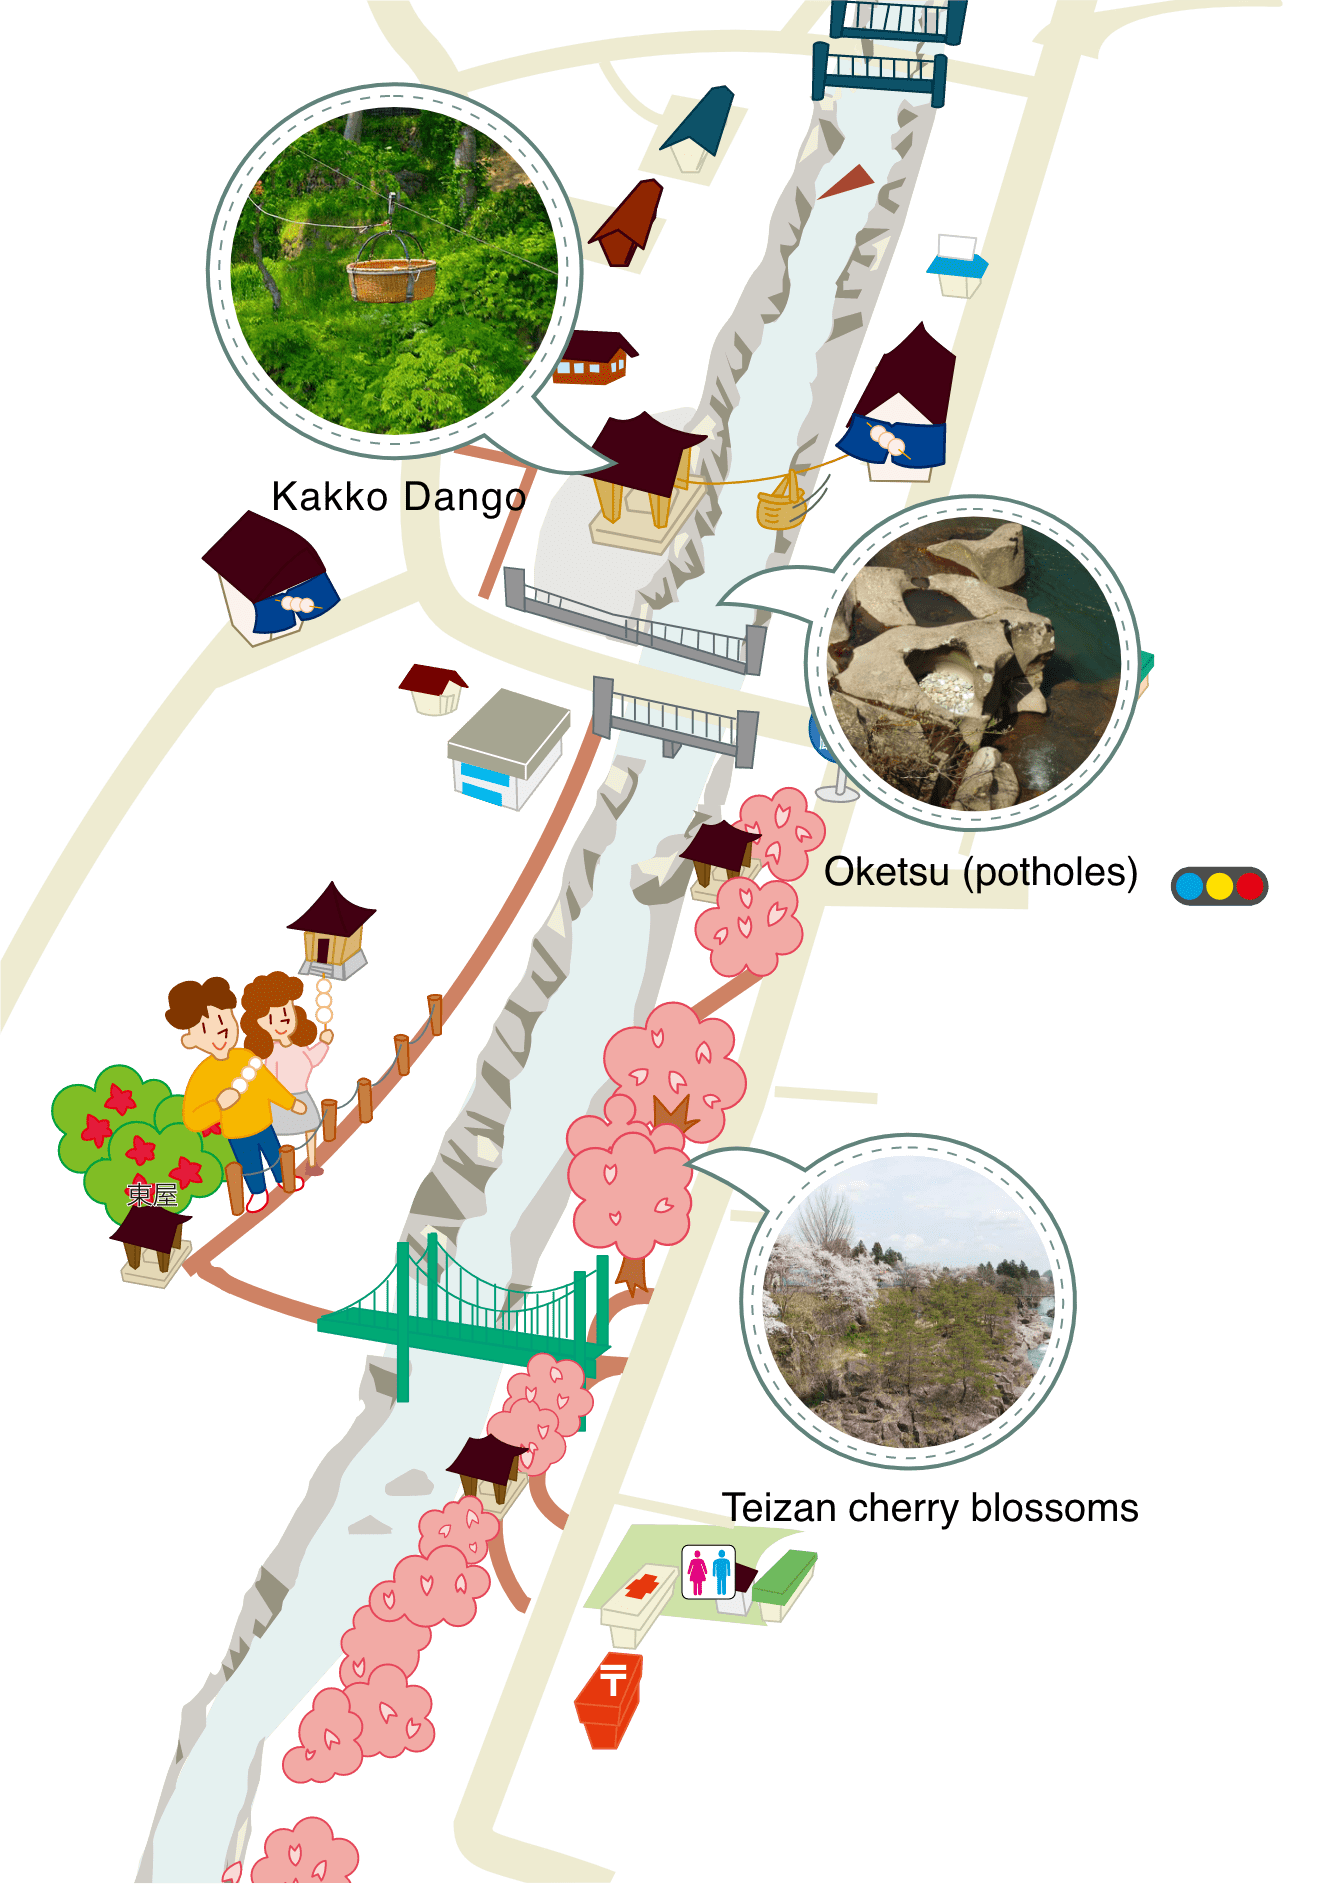 厳美渓周辺のマップ。近場には厳美渓温泉、かっこうだんご、甌穴、小松滝観音堂、御覧場橋、温泉神社、貞山桜などがあります。